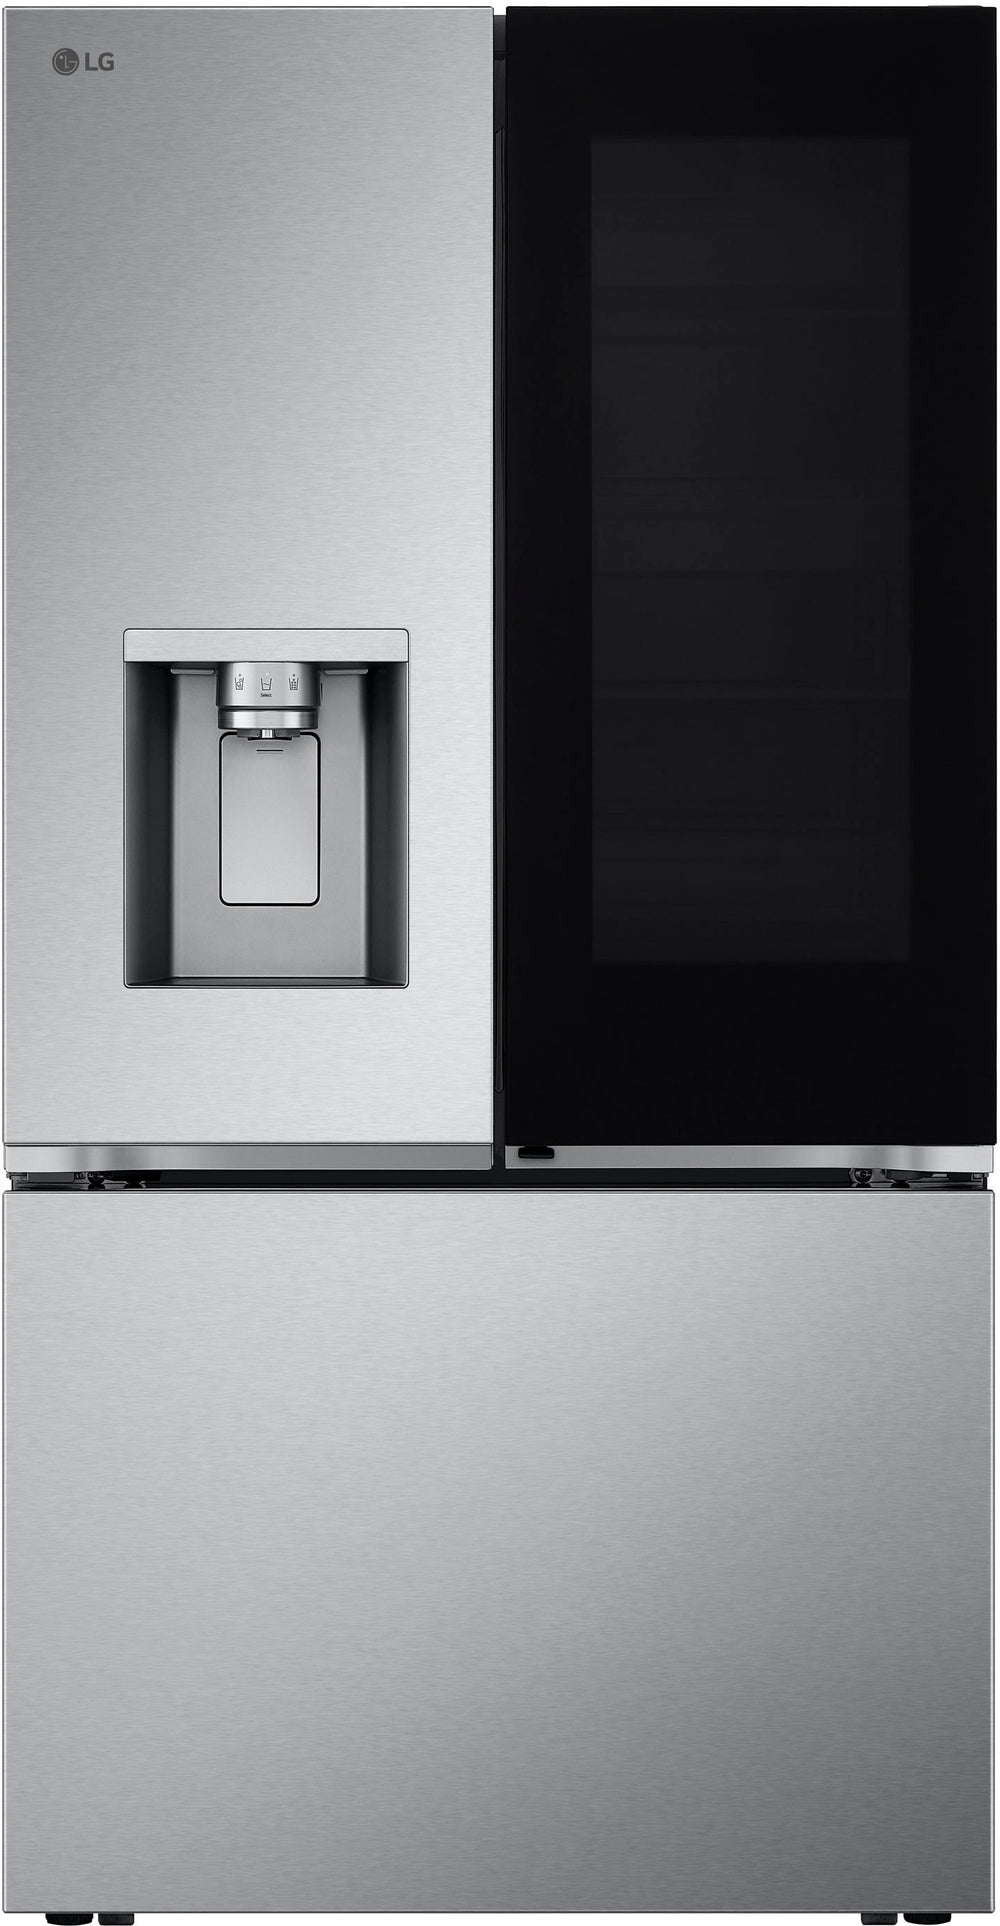 LG - 30.7 cu ft 3 Door French Door Refrigerator with Instaview - Stainless Steel_1